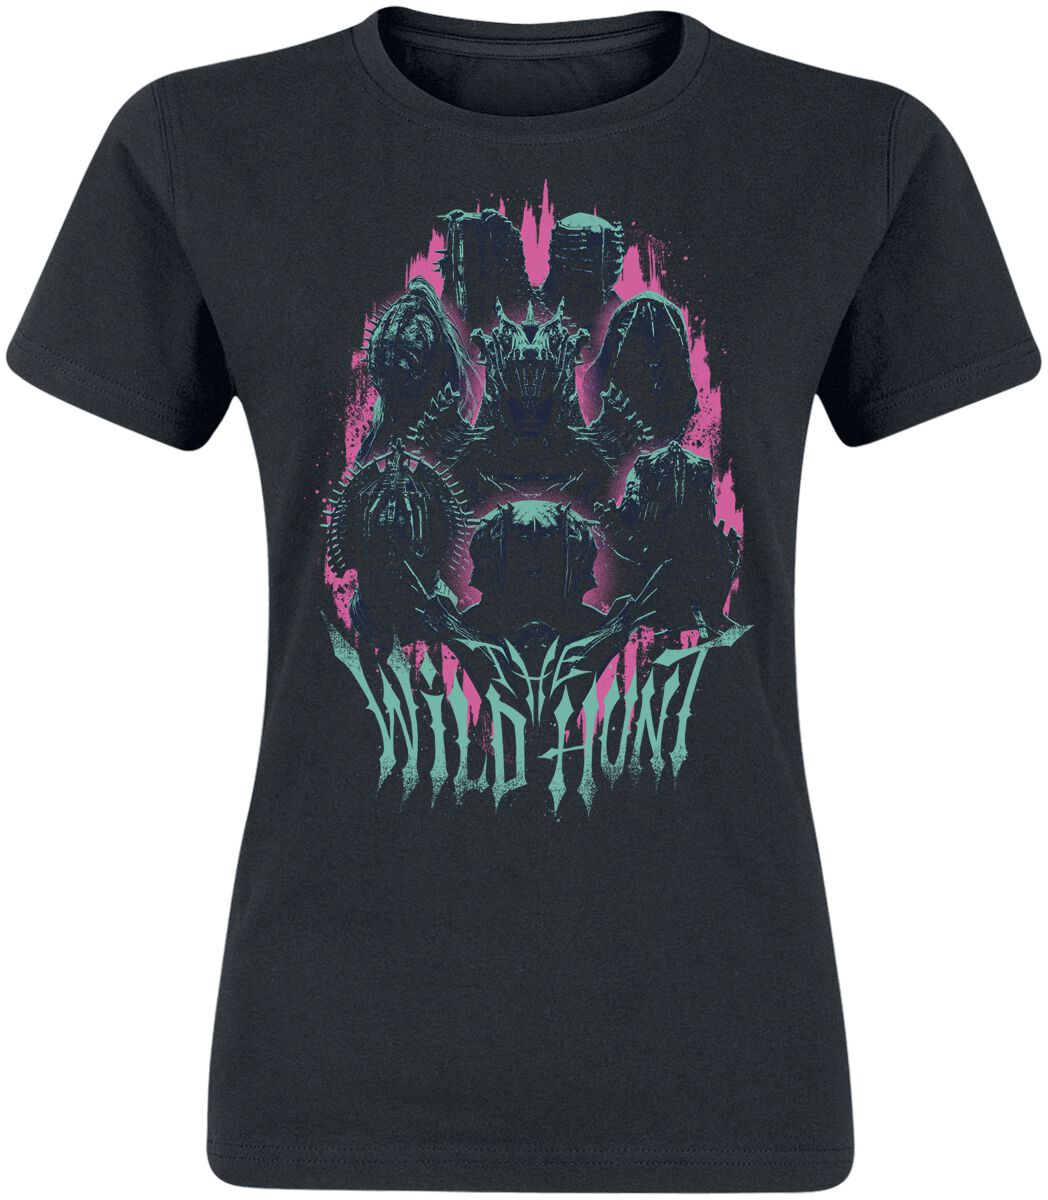 The Witcher T-Shirt - Season 3 - Wildhunt - S bis XXL - für Damen - Größe M - schwarz  - EMP exklusives Merchandise!